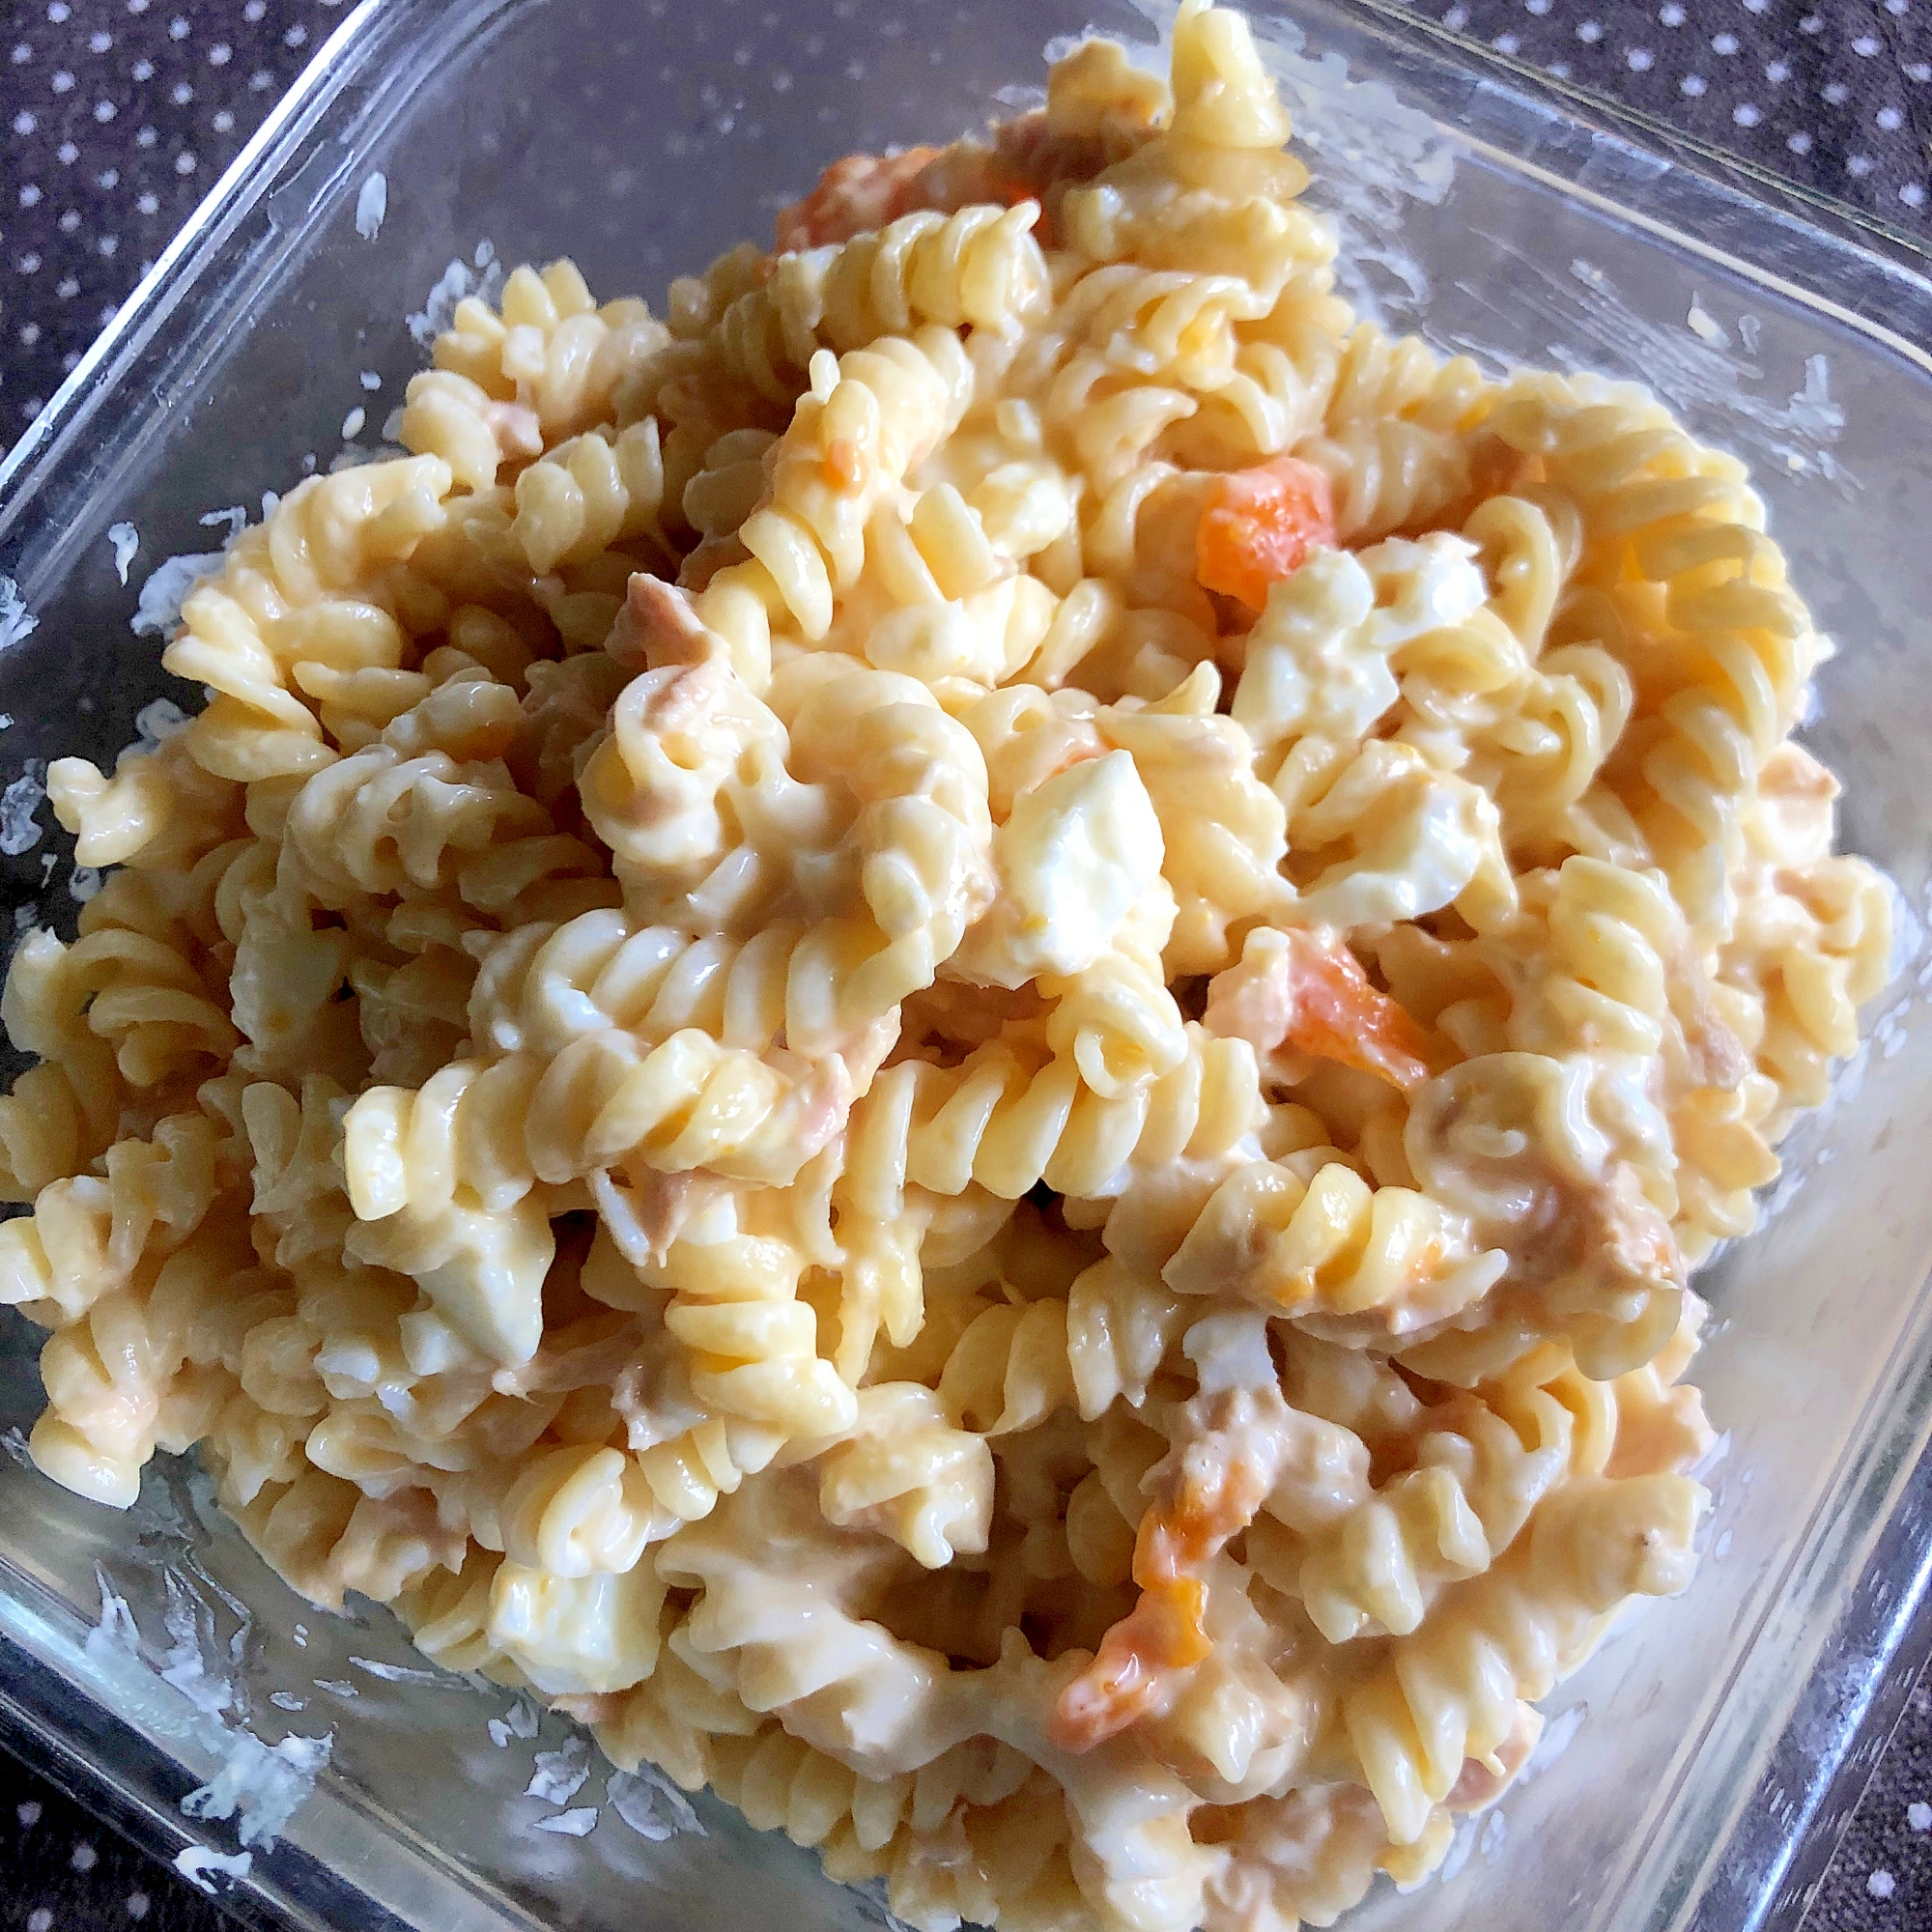 ツナを楽しむマカロニサラダのレシピ15選 バリエ豊富な食材アレンジ Macaroni